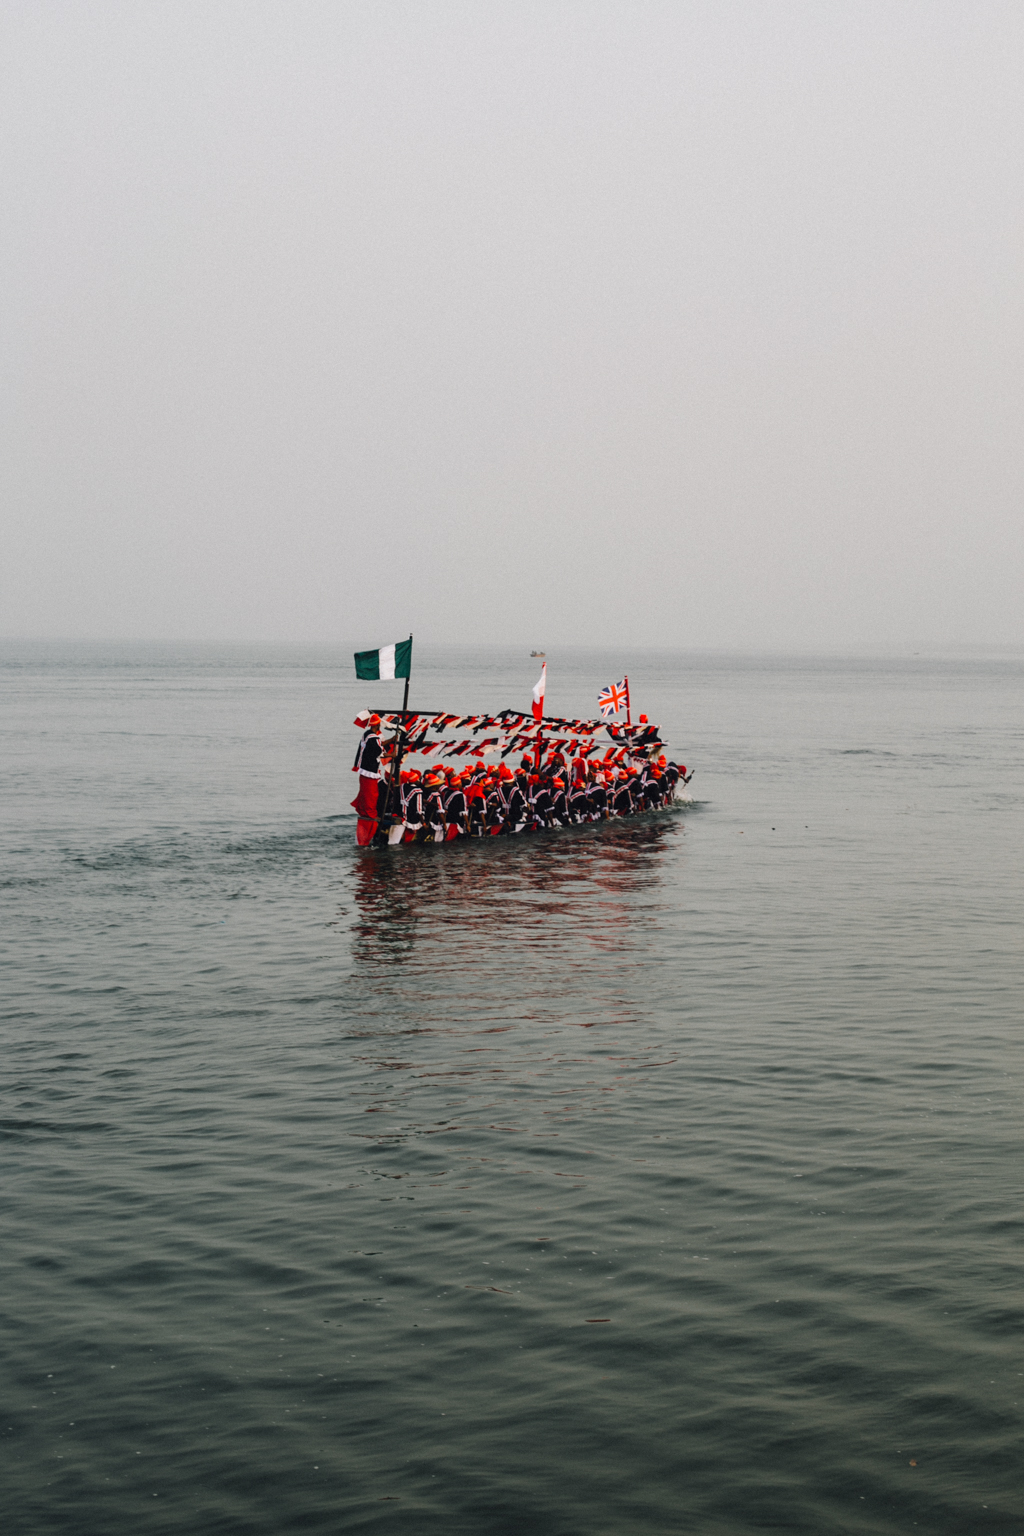 Opobo Boat Regatta, 2015